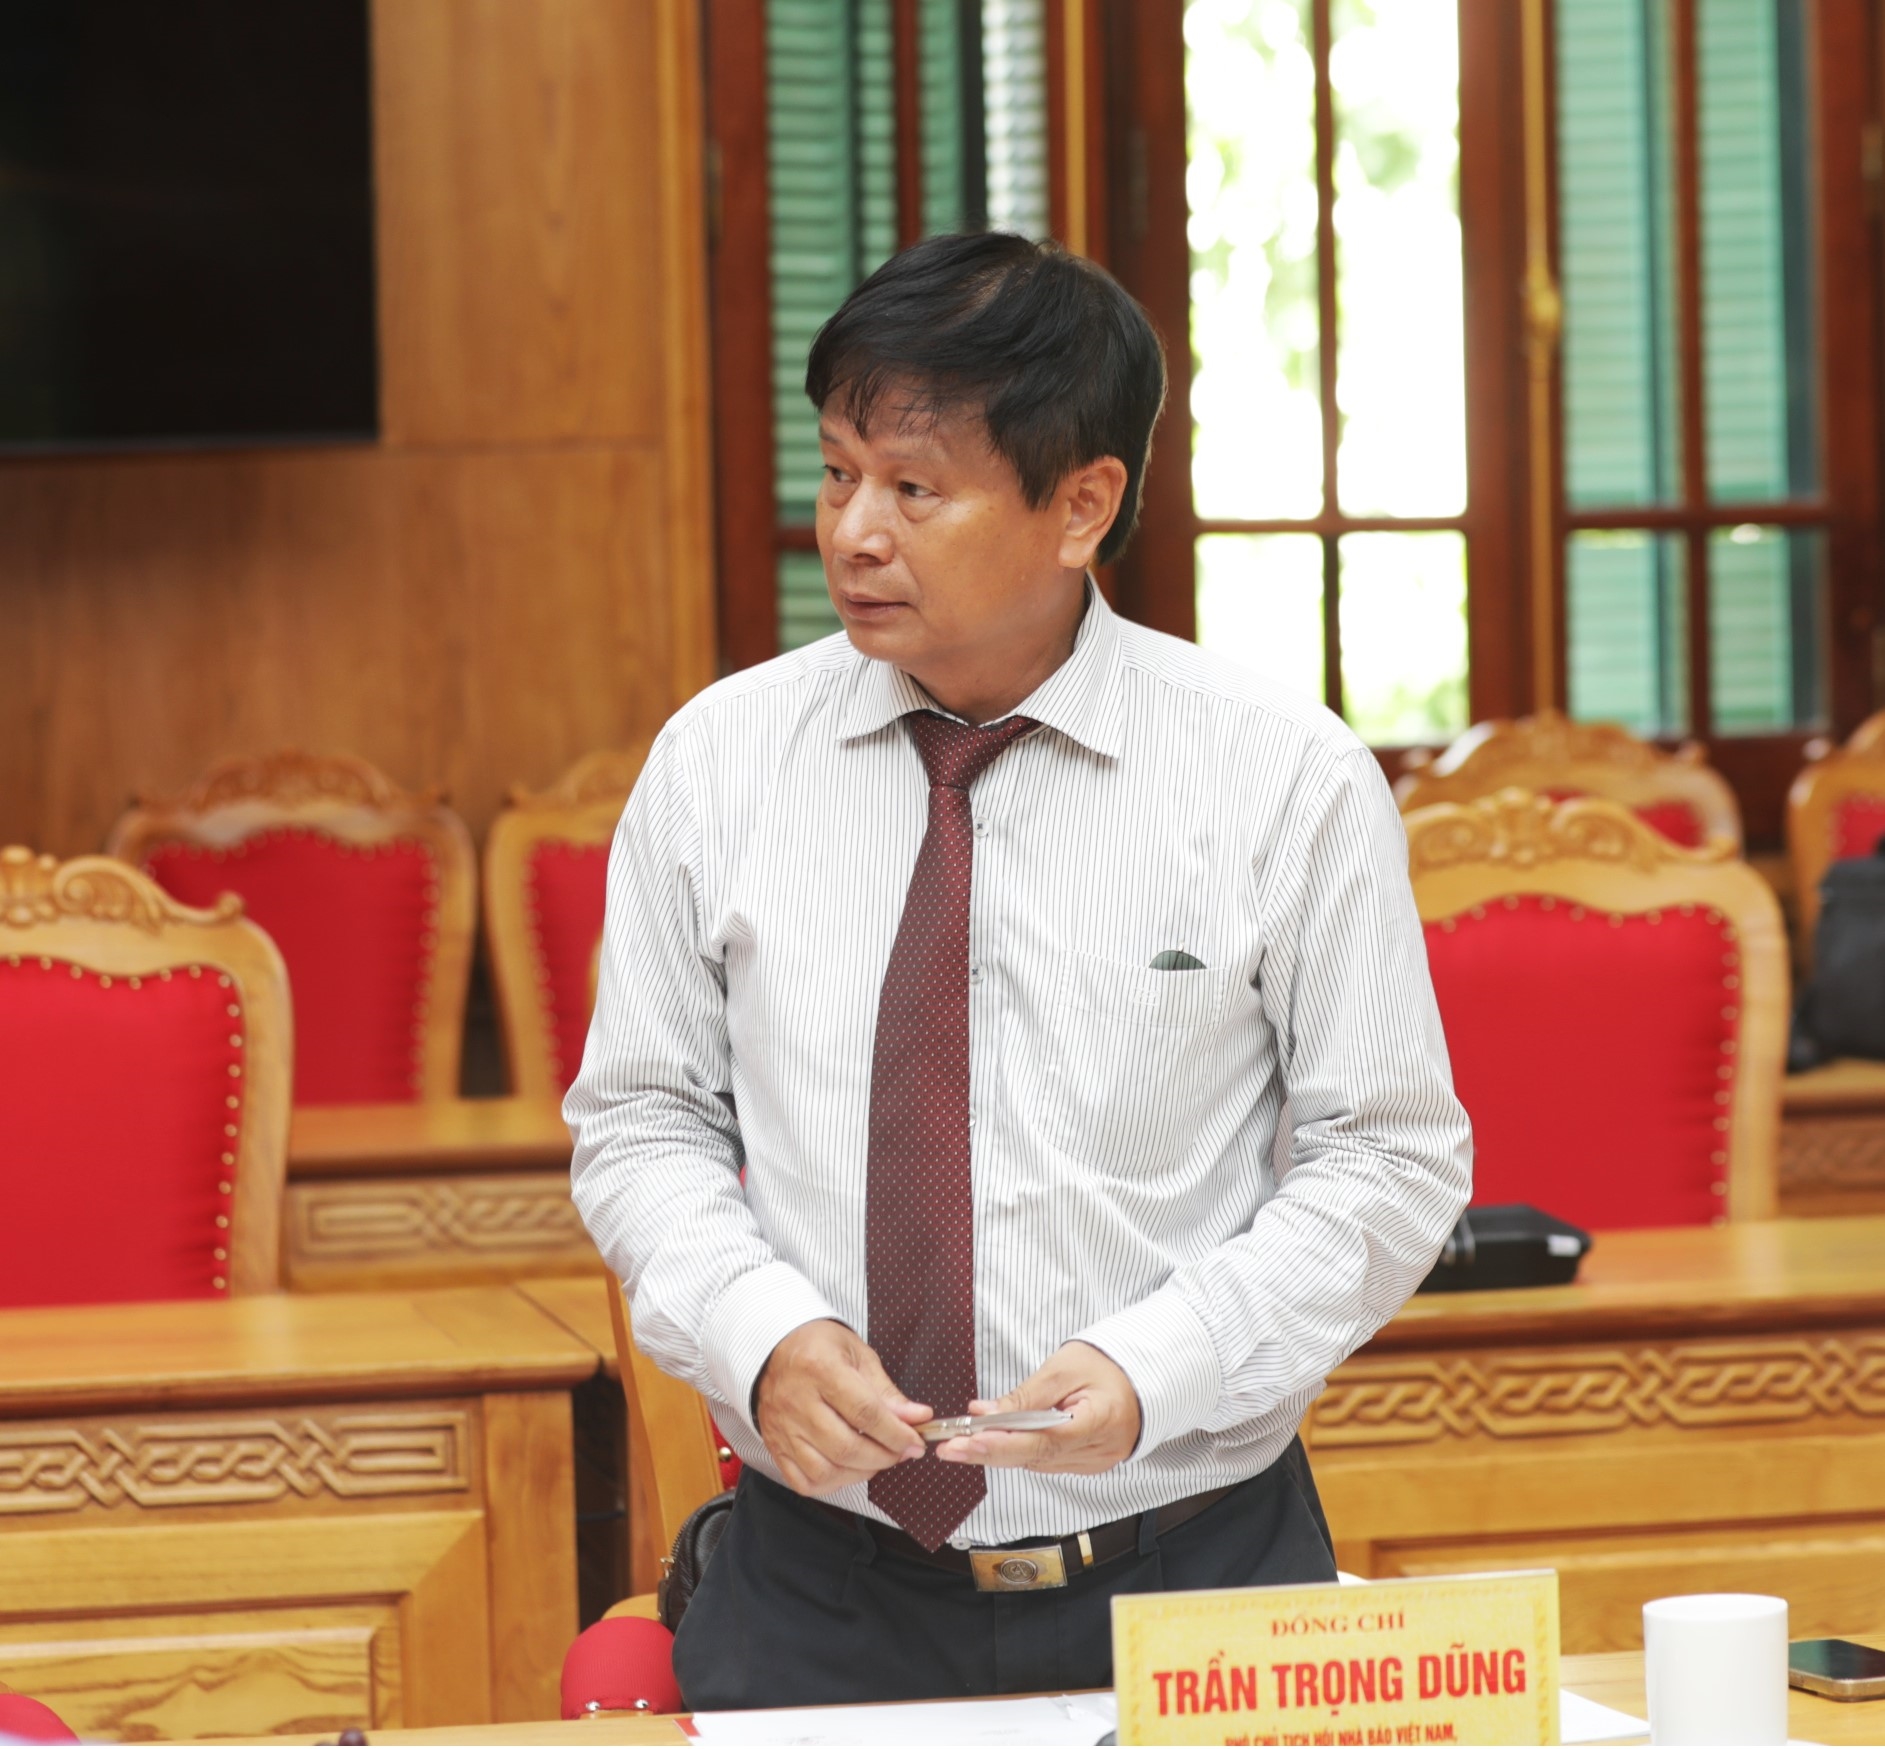 Đồng chí Trần Trọng Dũng, Phó Chủ tịch Hội Nhà báo Việt Nam phát biểu tại hội nghị.